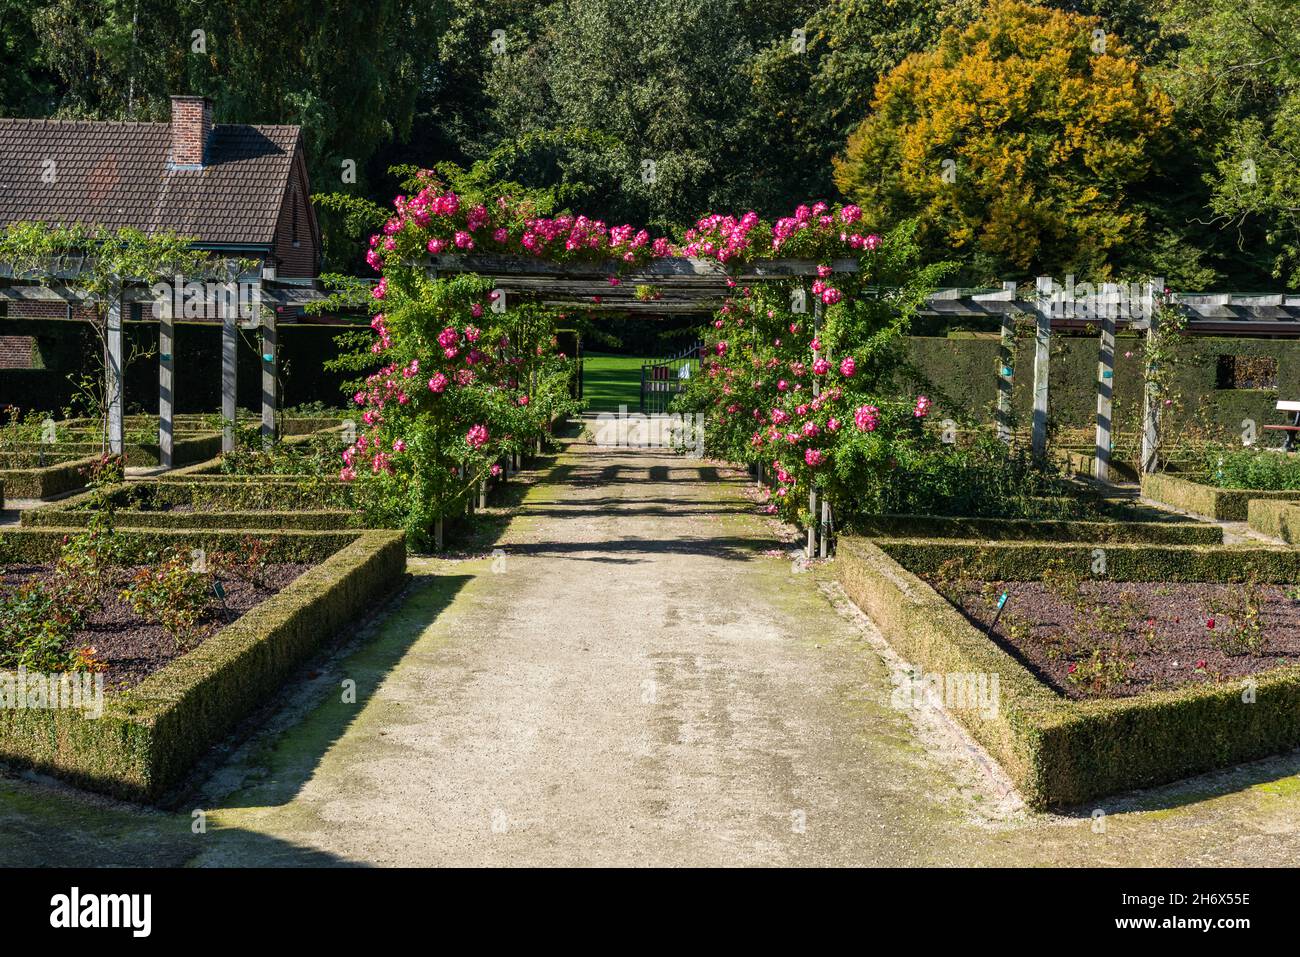 Sint-Pieters-Leeuw, Región Flamenca - Bélgica - 10 17 2021: Entrada del jardín de rosas en el jardín y parque de Coloma Foto de stock